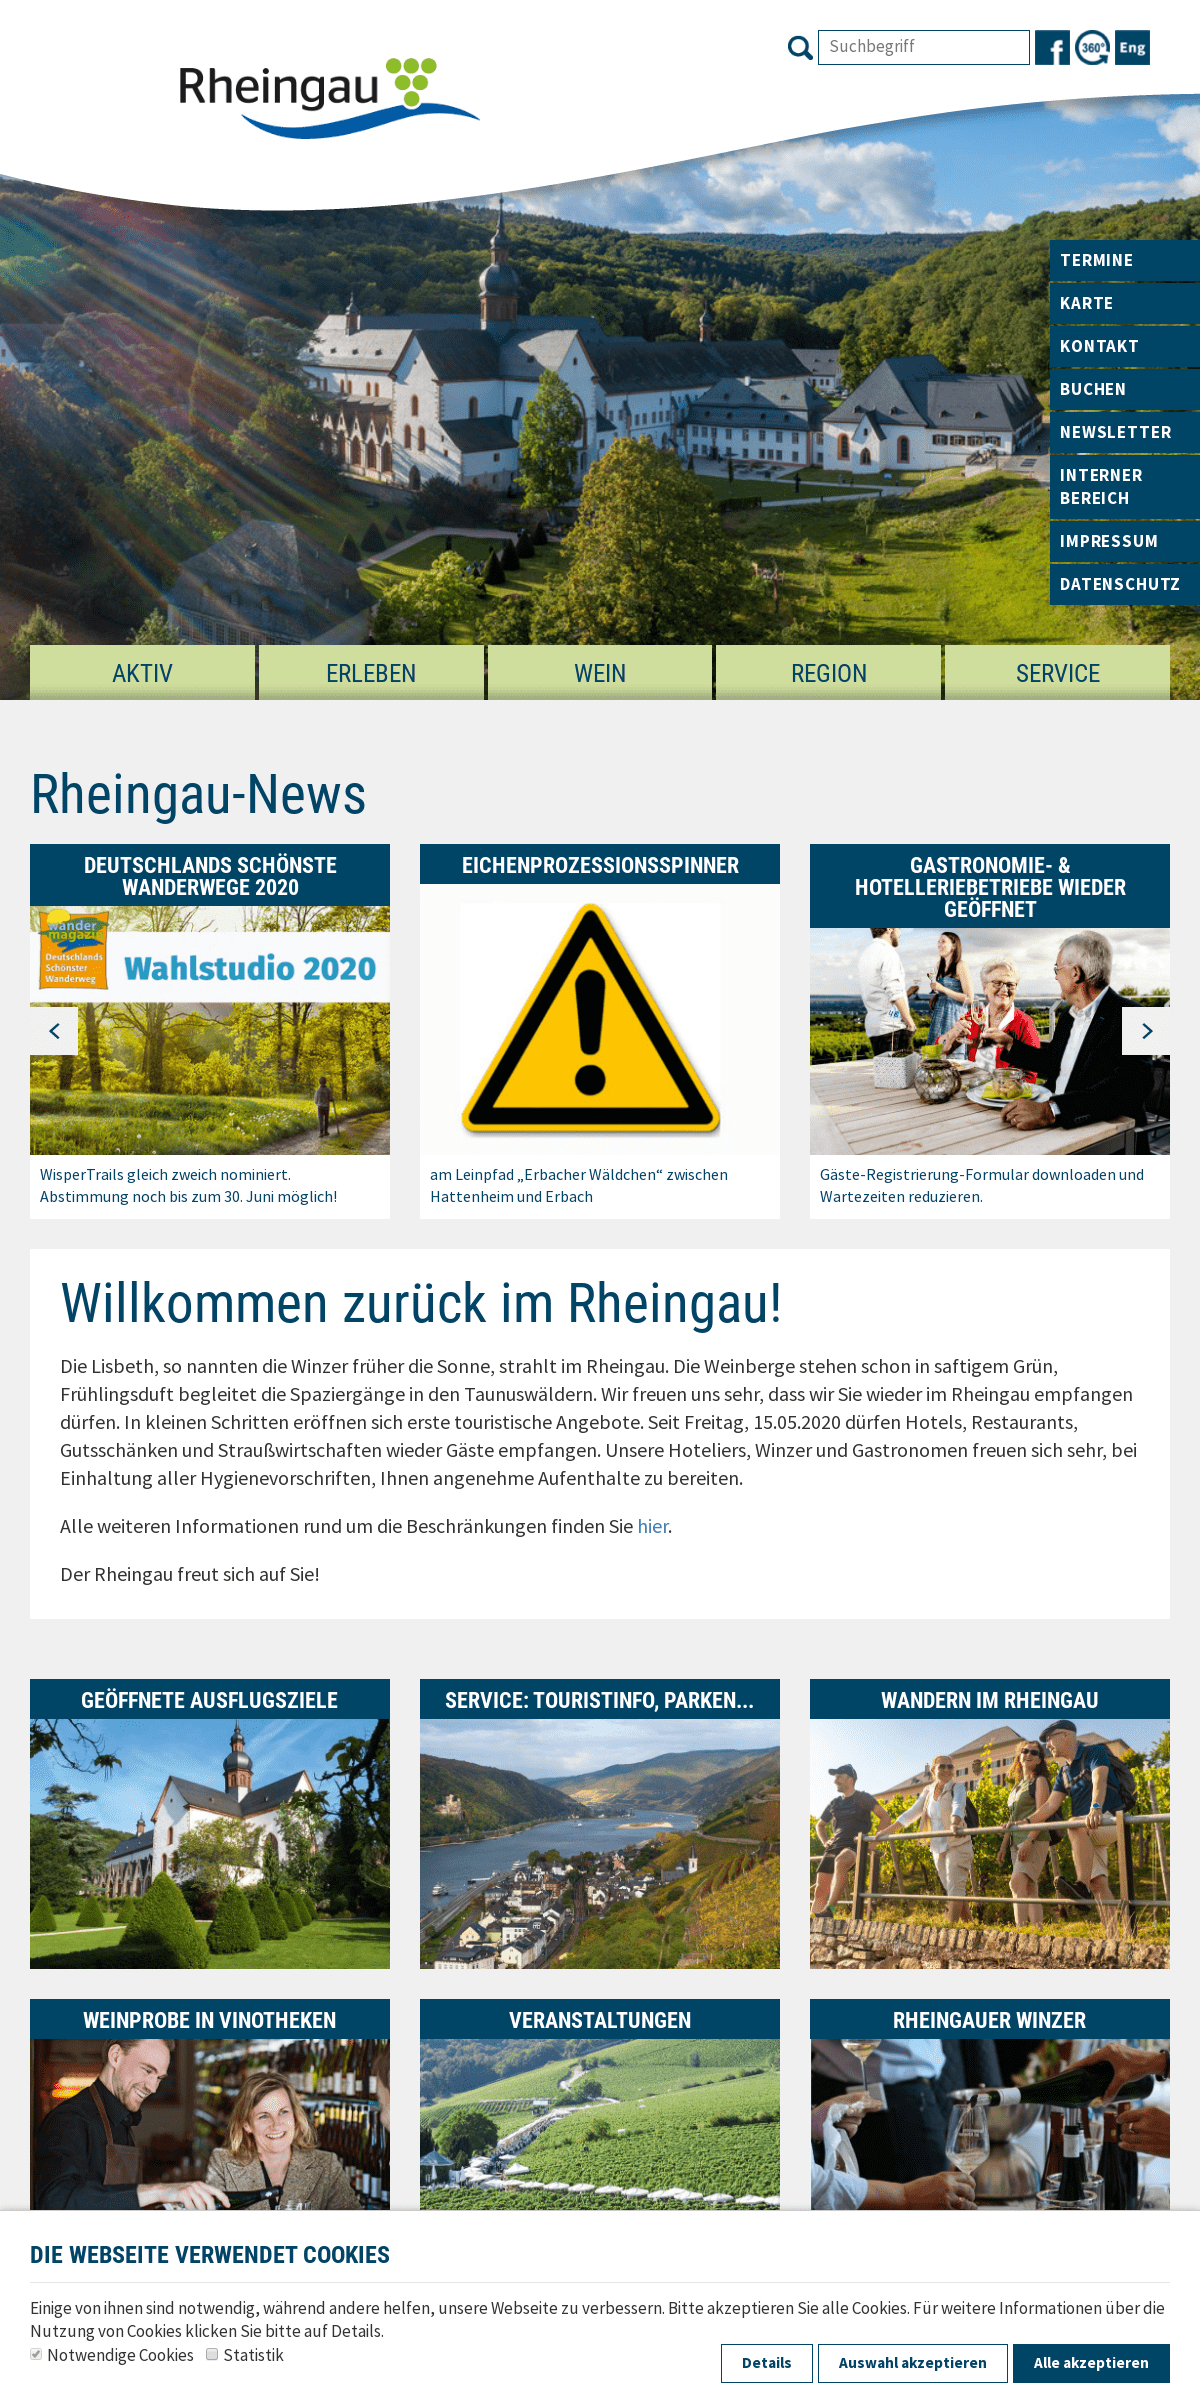 A complete backup of rheingau.com